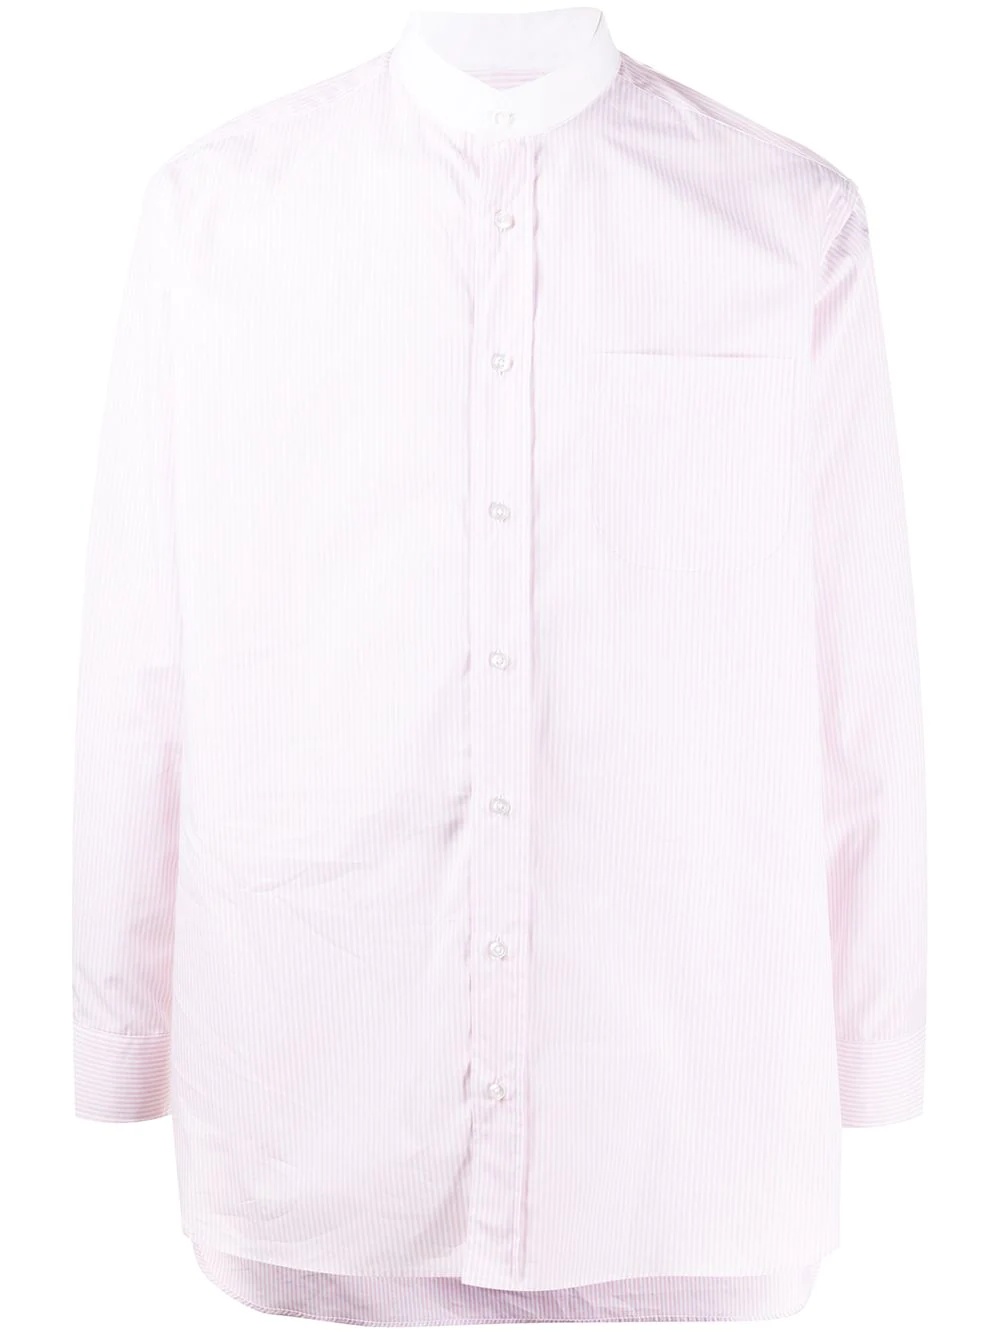 mandarin-collar buttoned shirt - 1